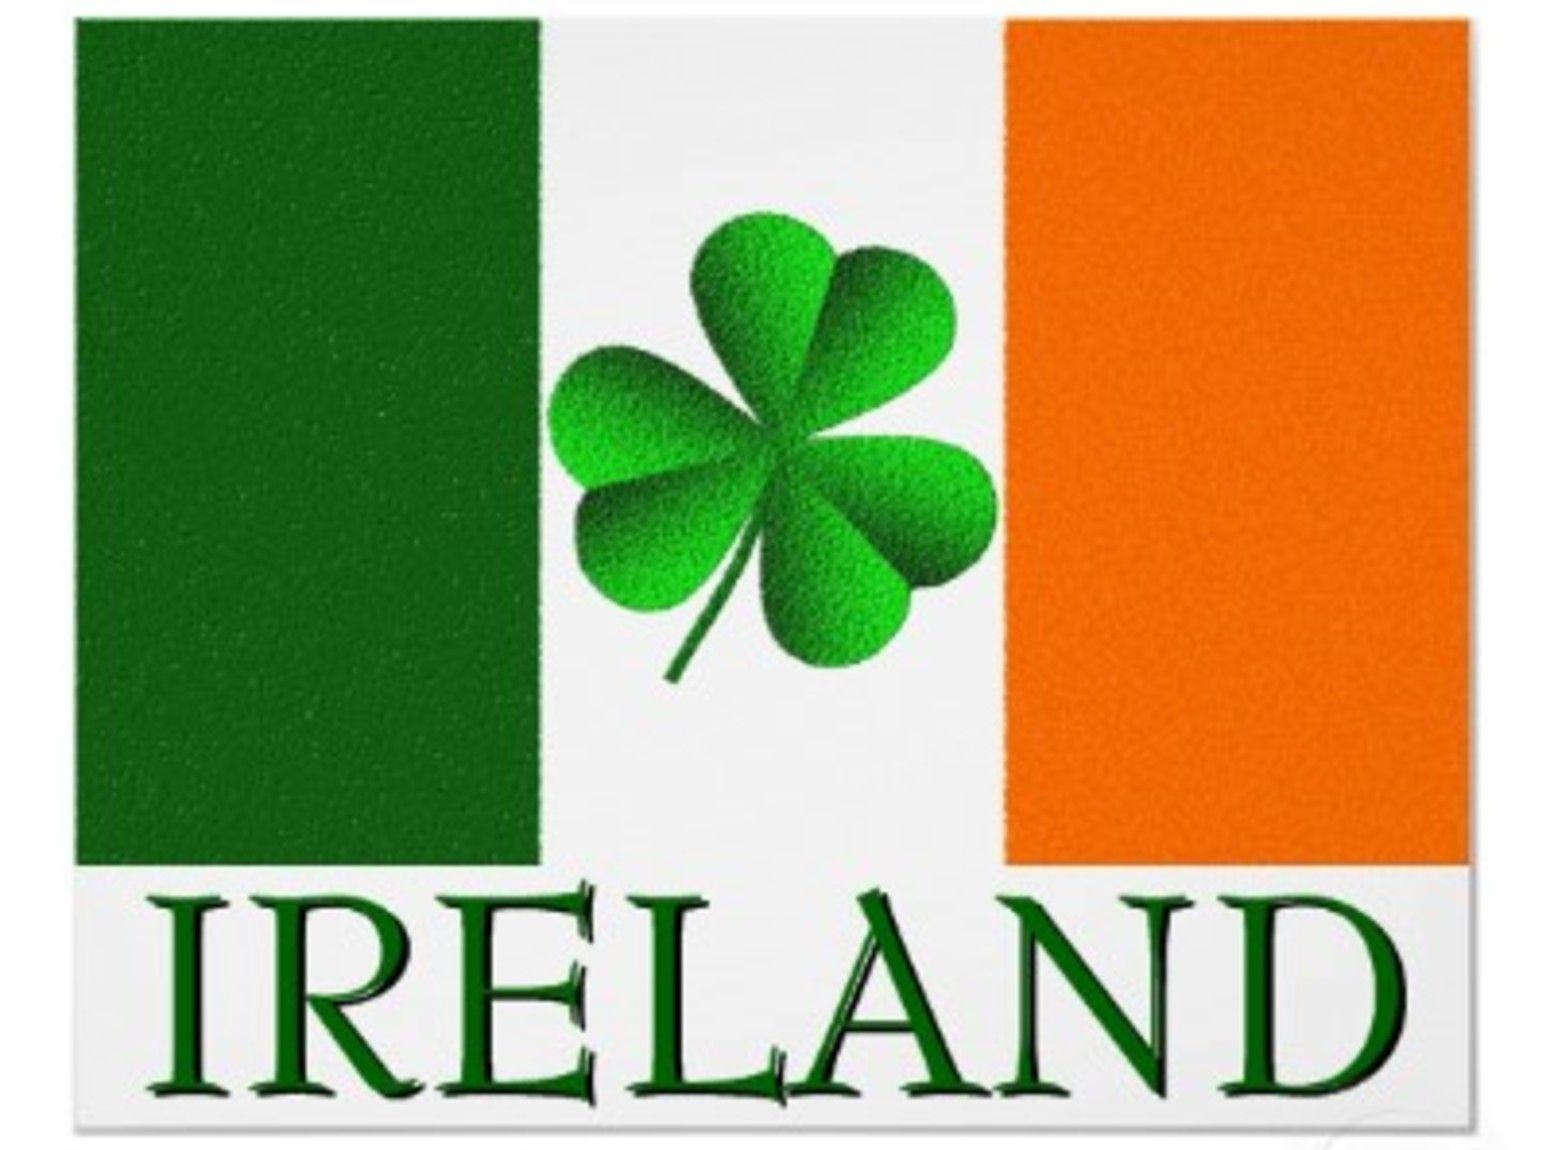 1550x1150px Irish Flag.01.2016